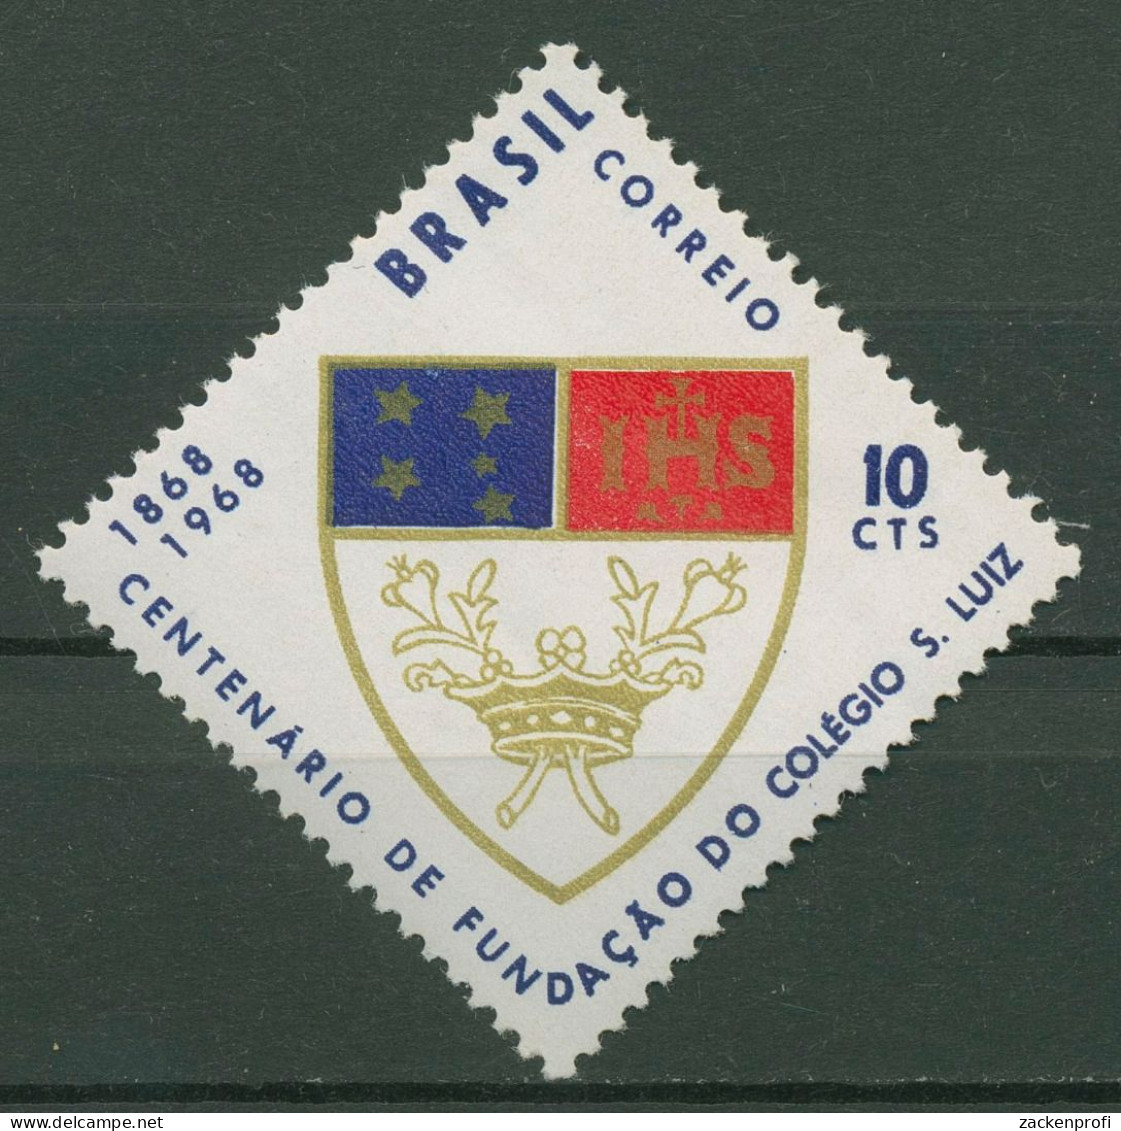 Brasilien 1968 Schule Colegio Sao Luiz, Rio De Janeiro 1170 Postfrisch - Unused Stamps